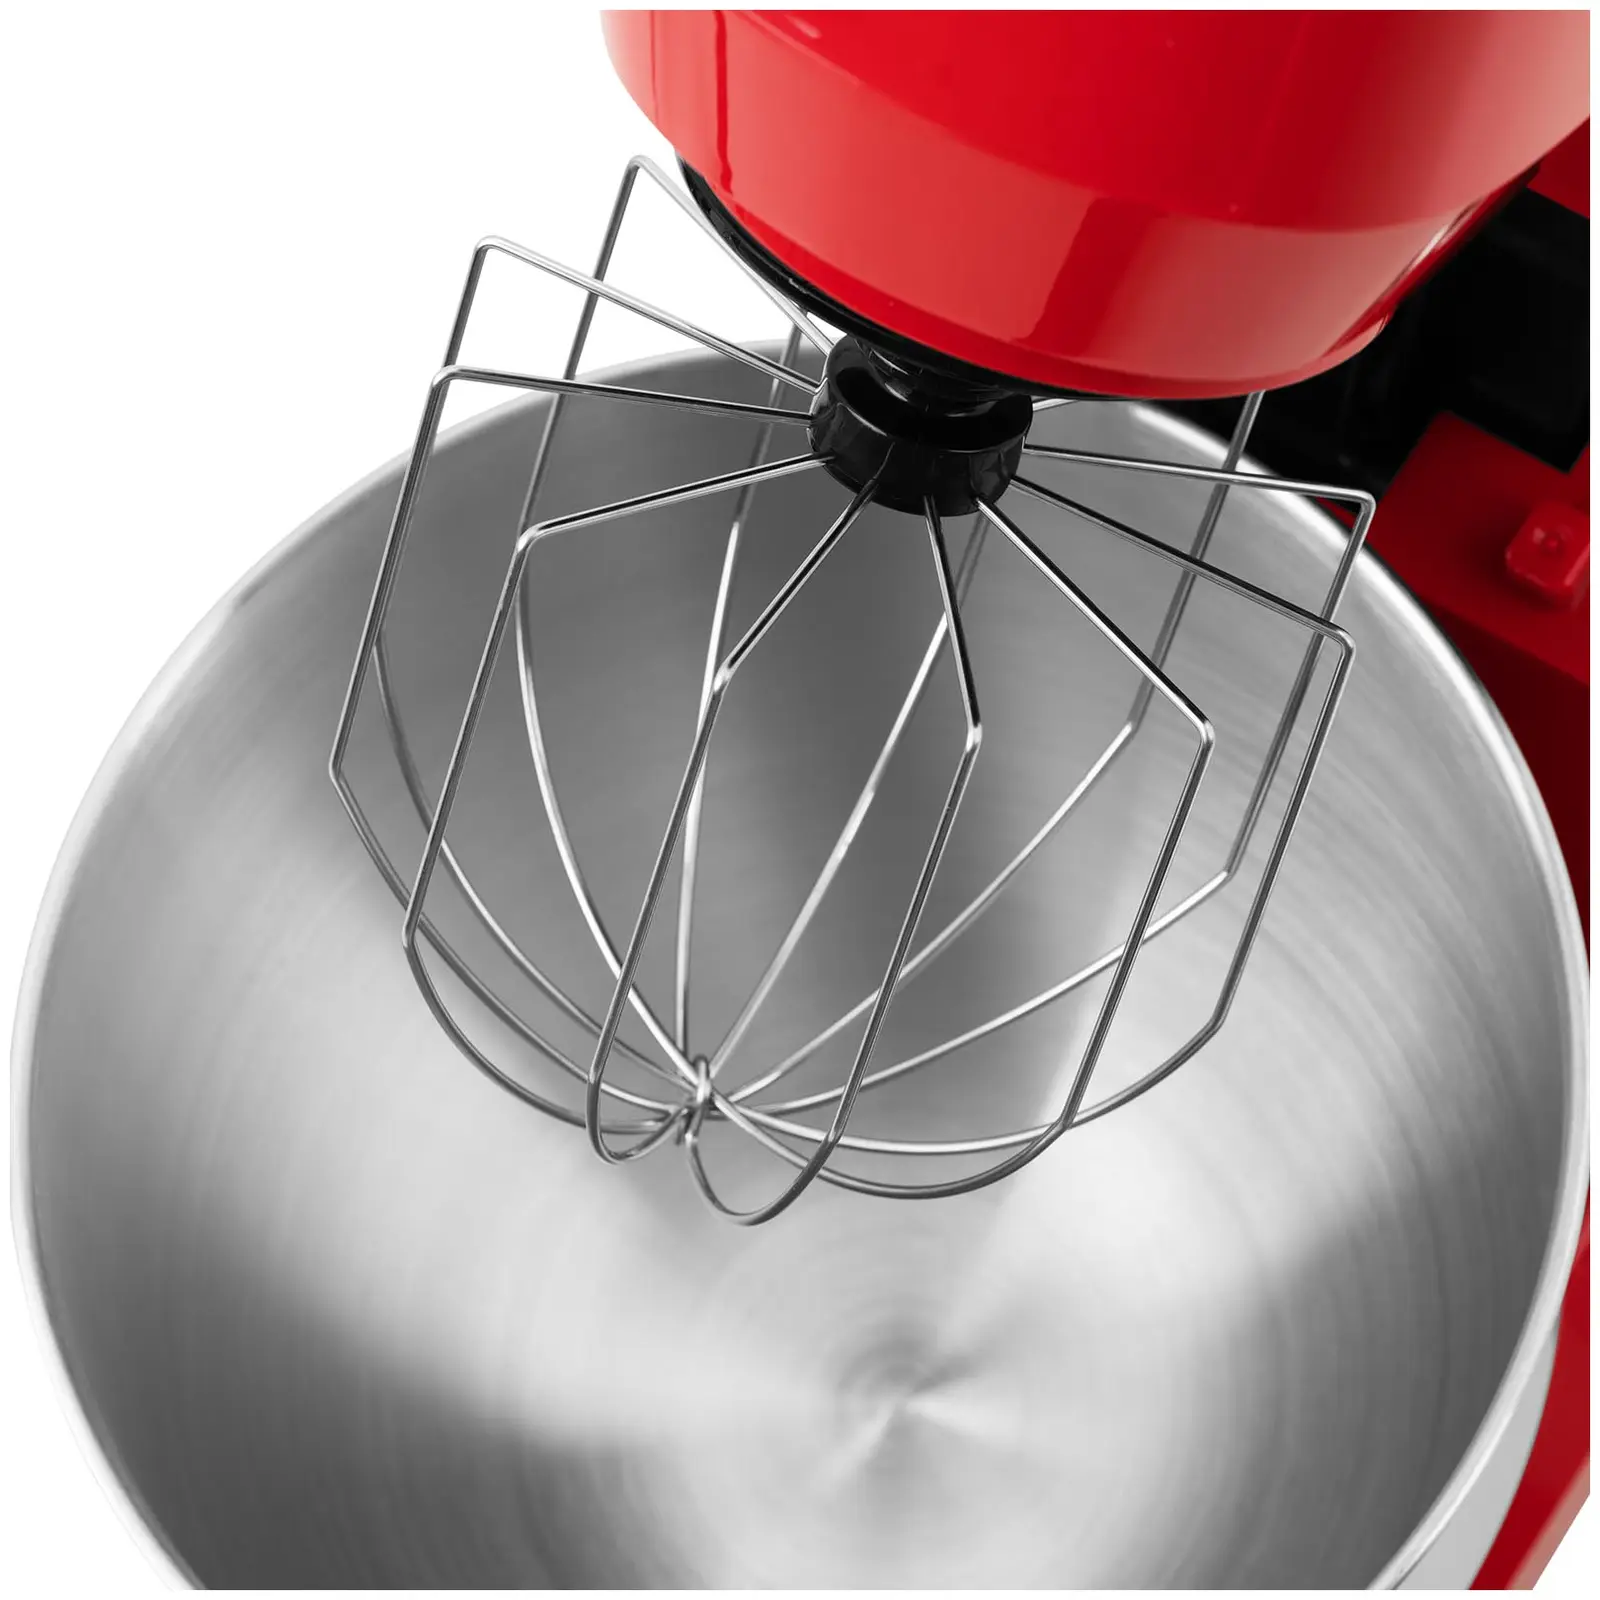 Kuchynský robot - vrátane mixéra, mlynčeka na mäso a nadstavca na krájanie - 1300 W - červený